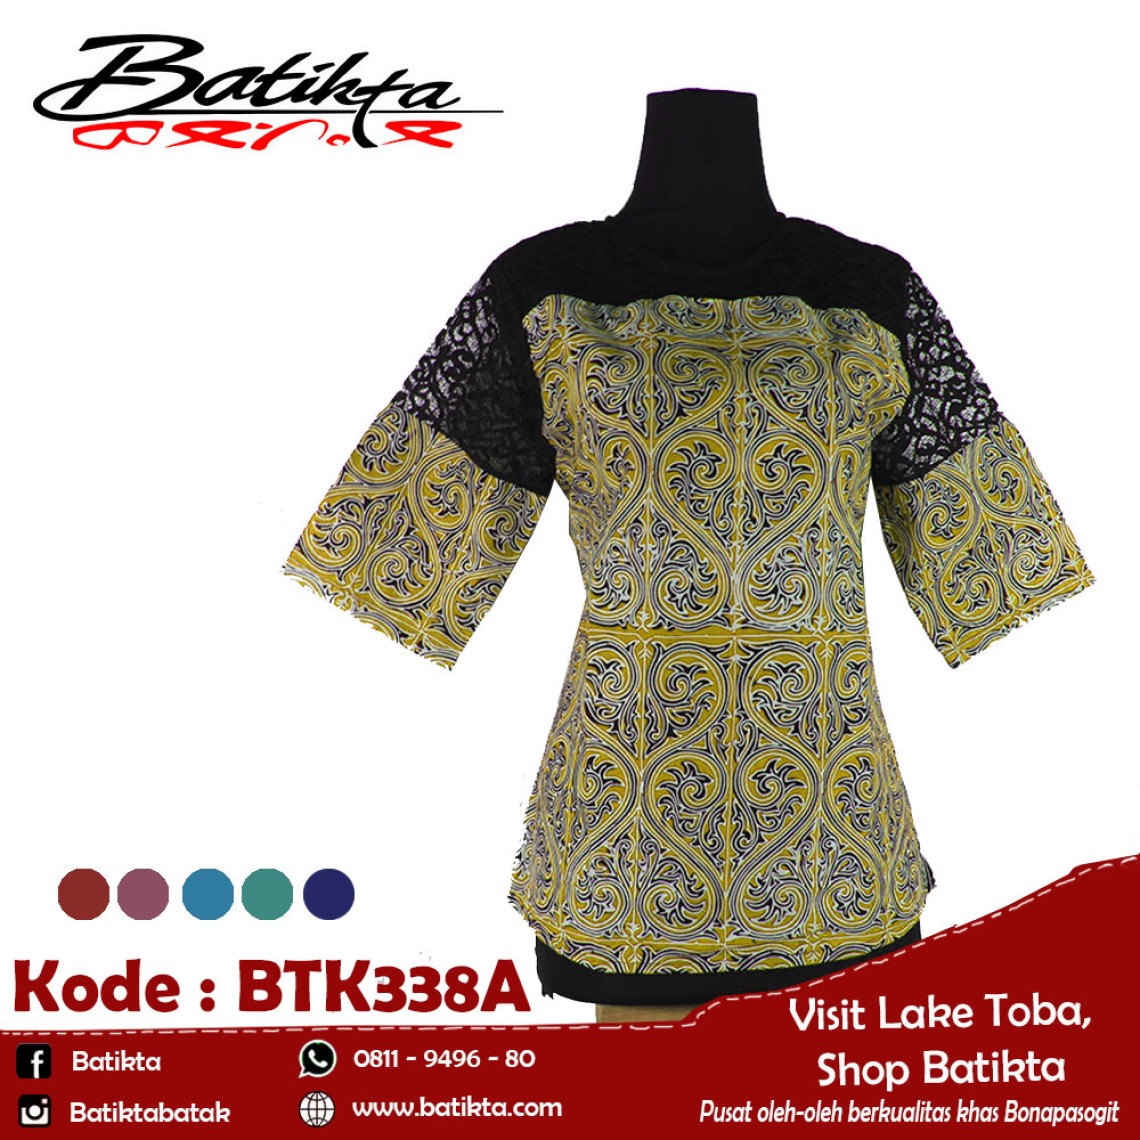 BTK338A Blus Batik Motif Gorga Warna Kuning Putih Hitam profile picture